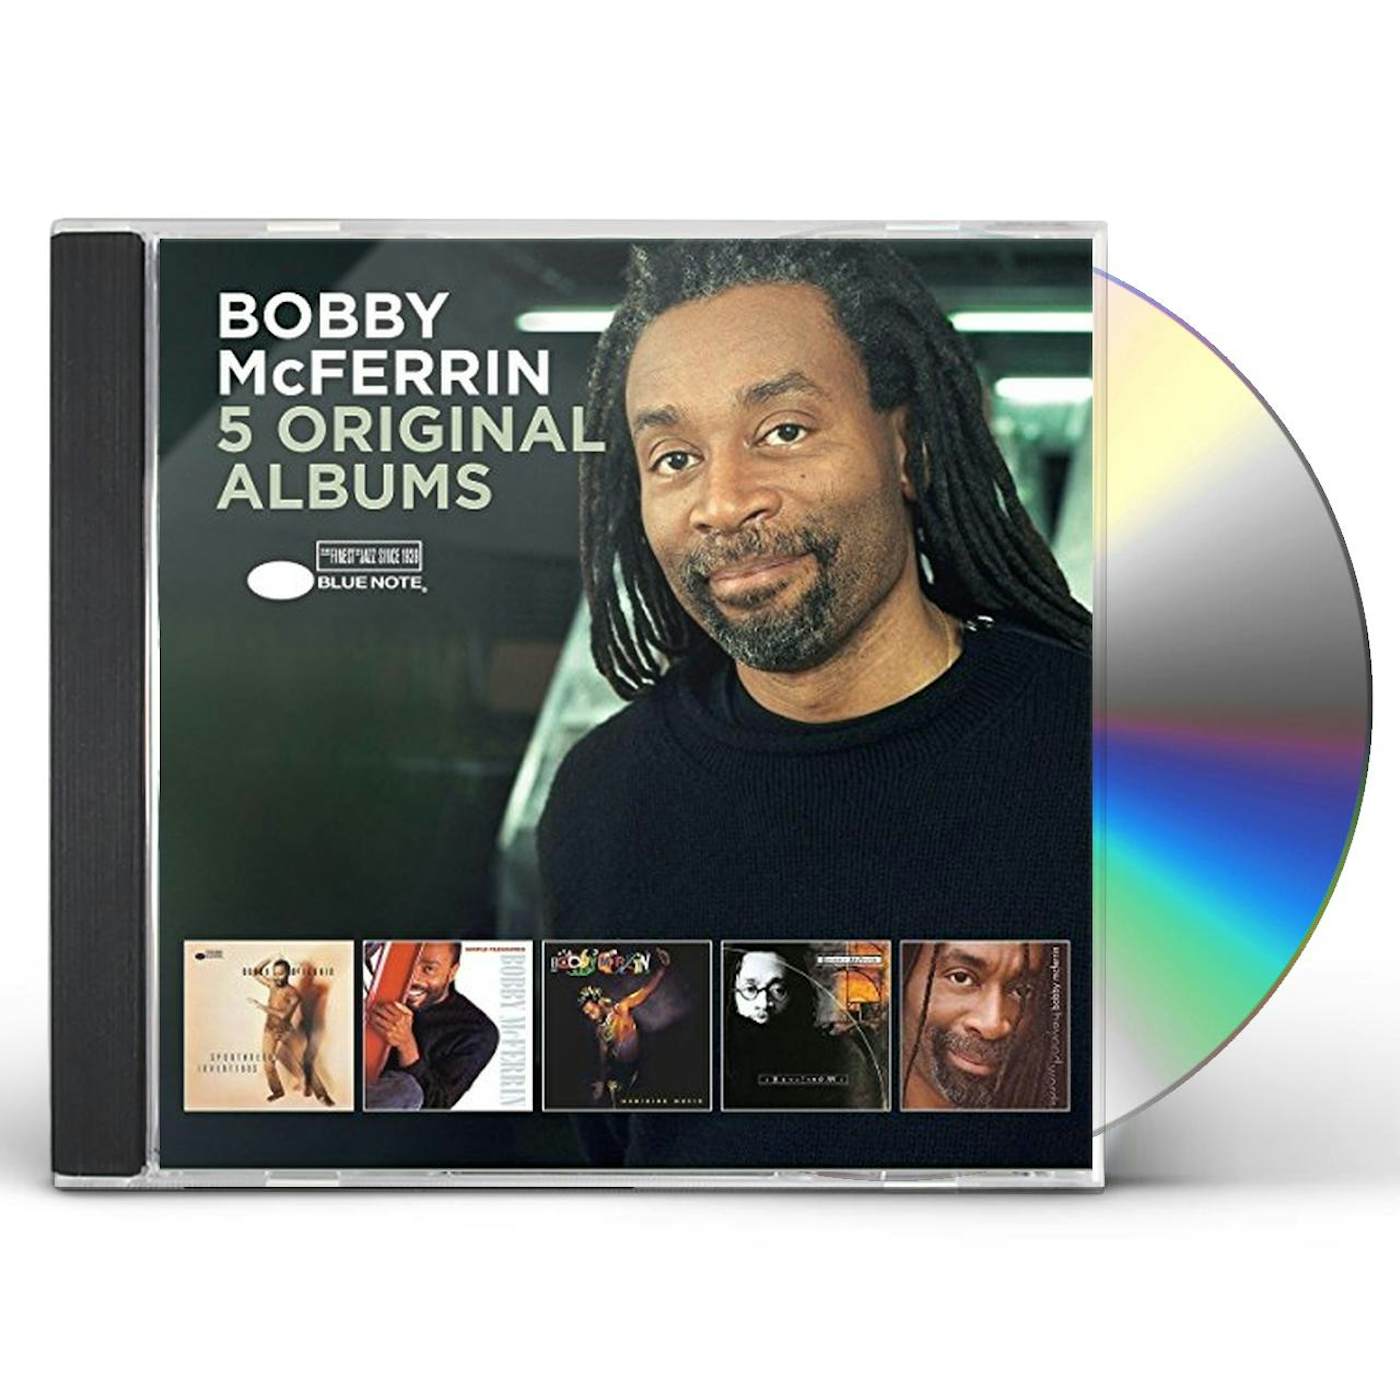 Bobby McFerrin 5 ORIGINAL ALBUMS CD